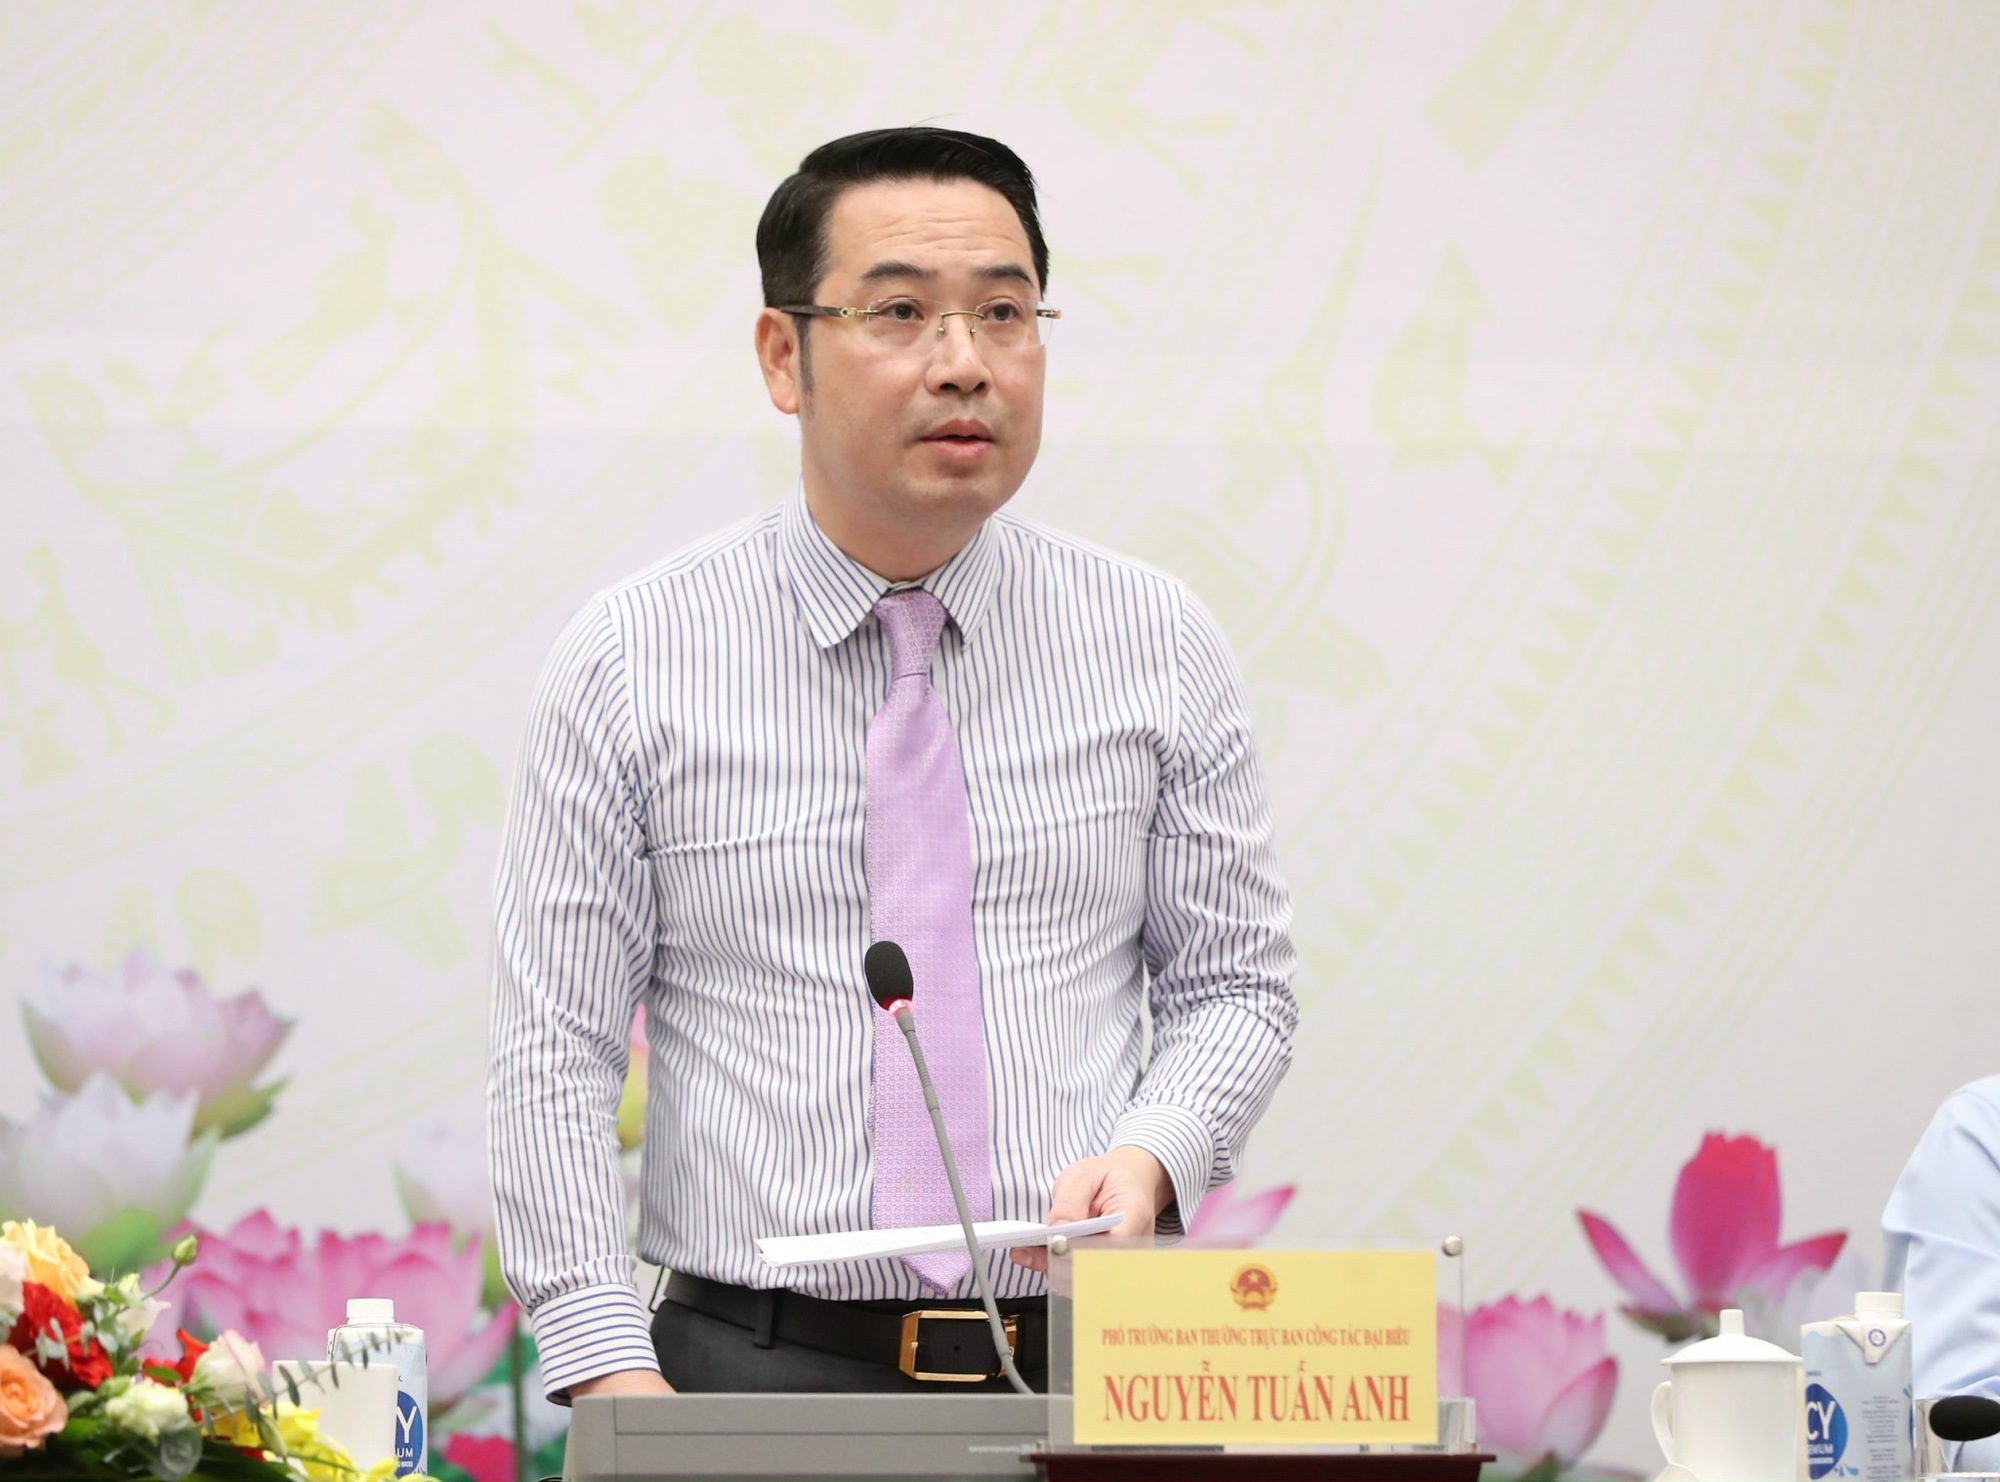 Phó trưởng Ban công tác đại biểu QH trả lời về sự vắng mặt của Phó Thủ tướng Lê Văn Thành - Ảnh 3.